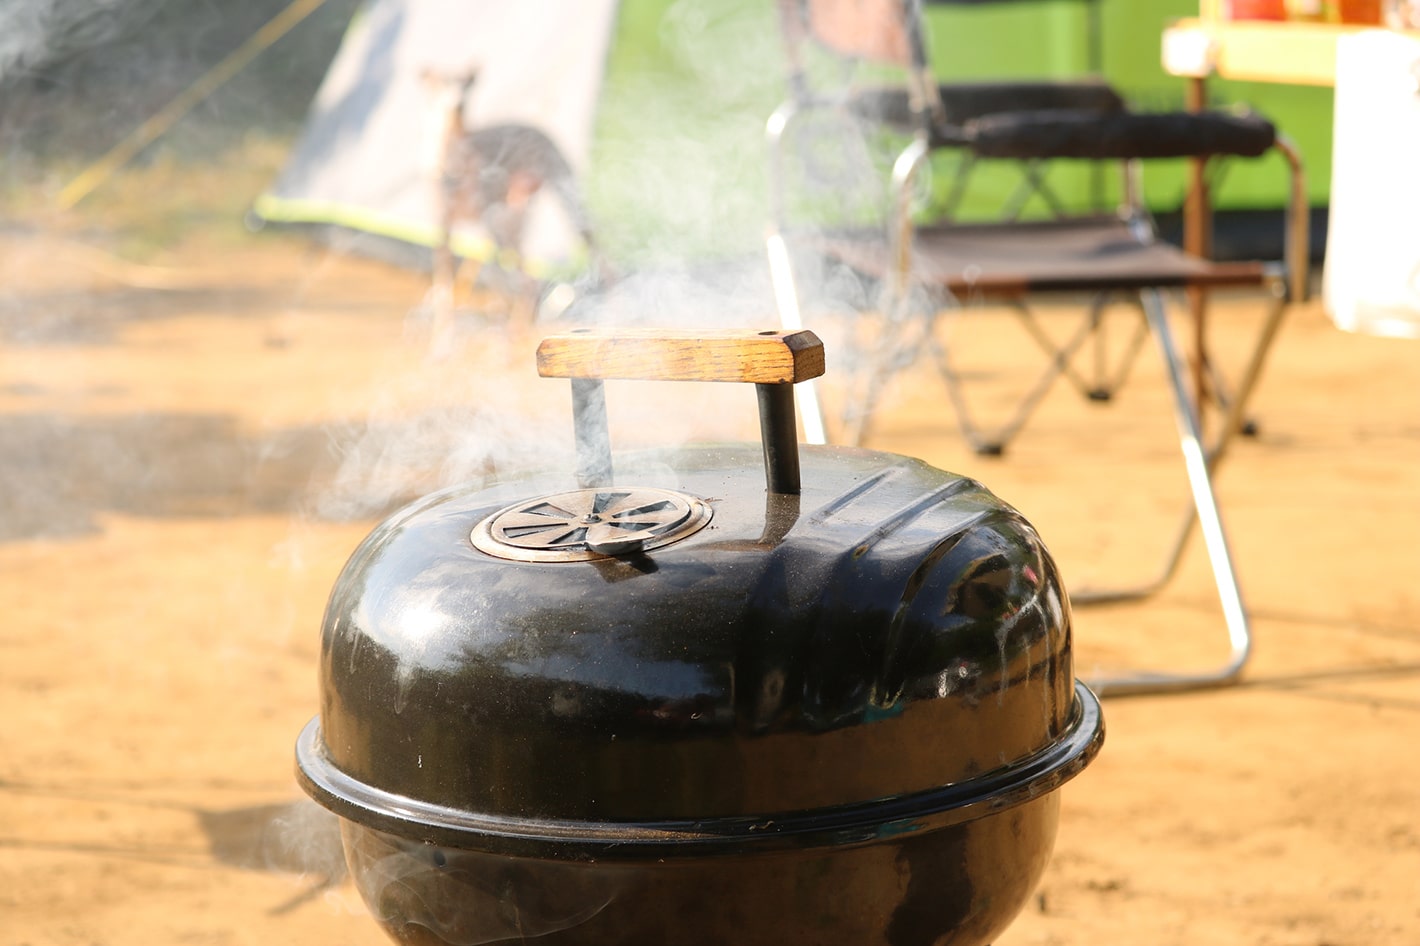 キャンプでは燻製が美味い 作り方やおすすめの食材をご紹介 キャンピングカーコラム キャンピングカーのフジ 株式会社フジカーズジャパン